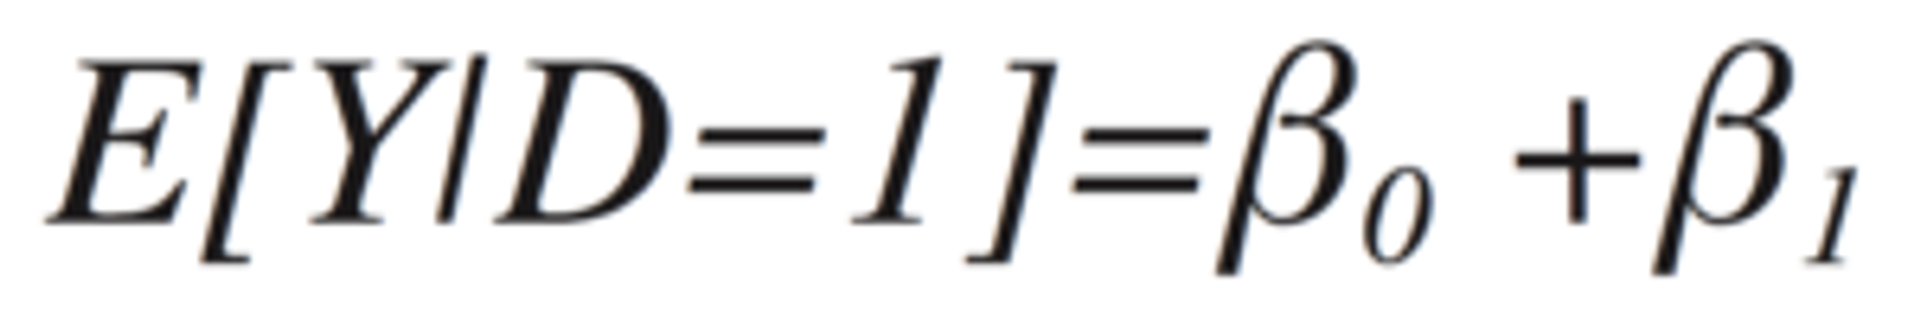 regression model formula